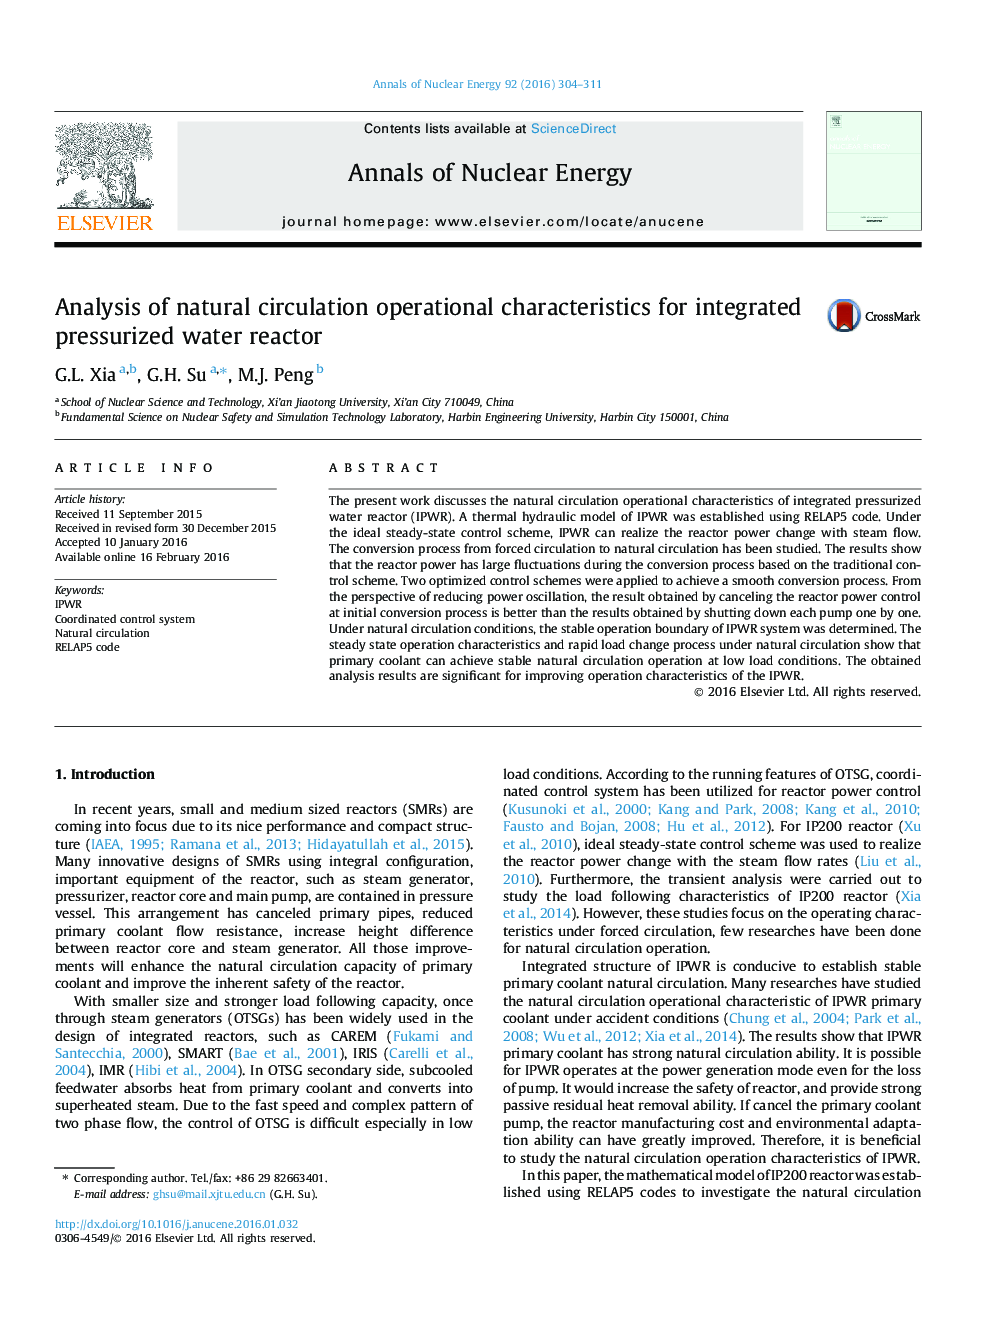 تجزیه و تحلیل ویژگی های عملیاتی گردش طبیعی برای یک راکتور آب یکپارچه 